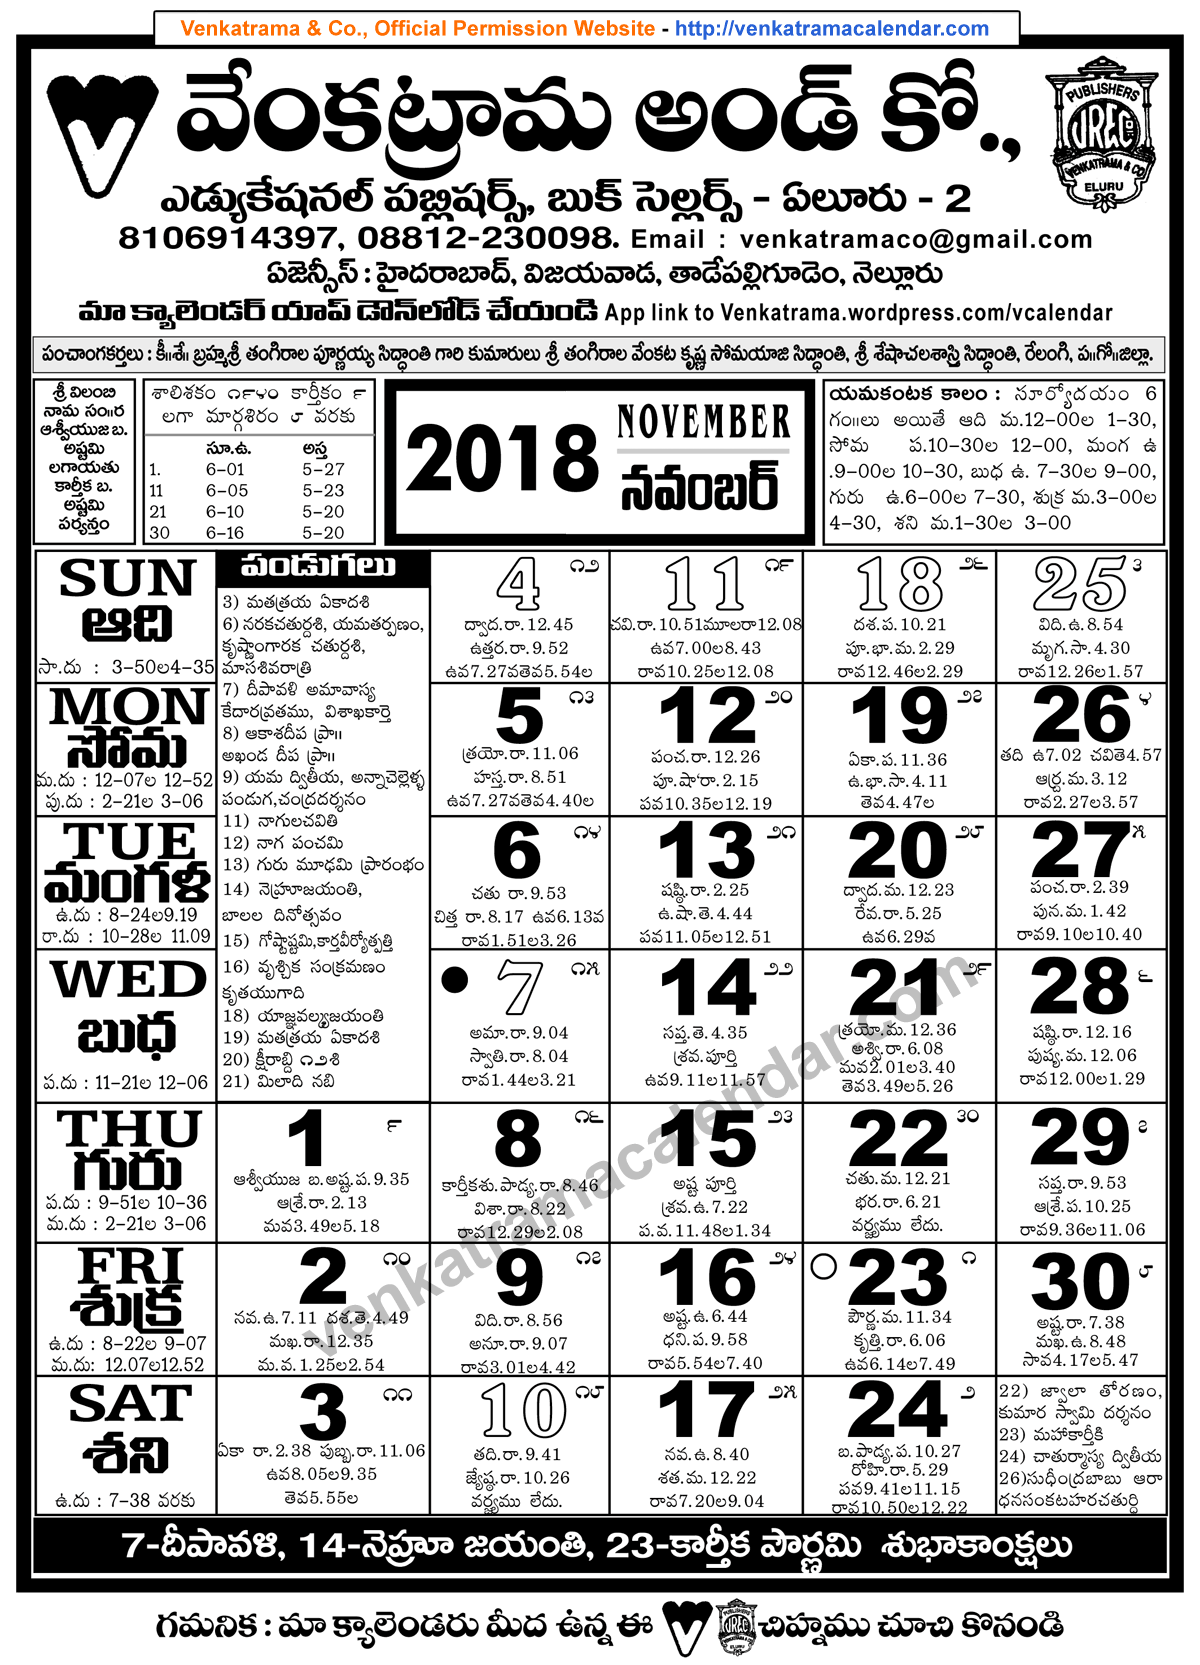 venkatrama-co-2018-november-telugu-calendar-festivals-holidays